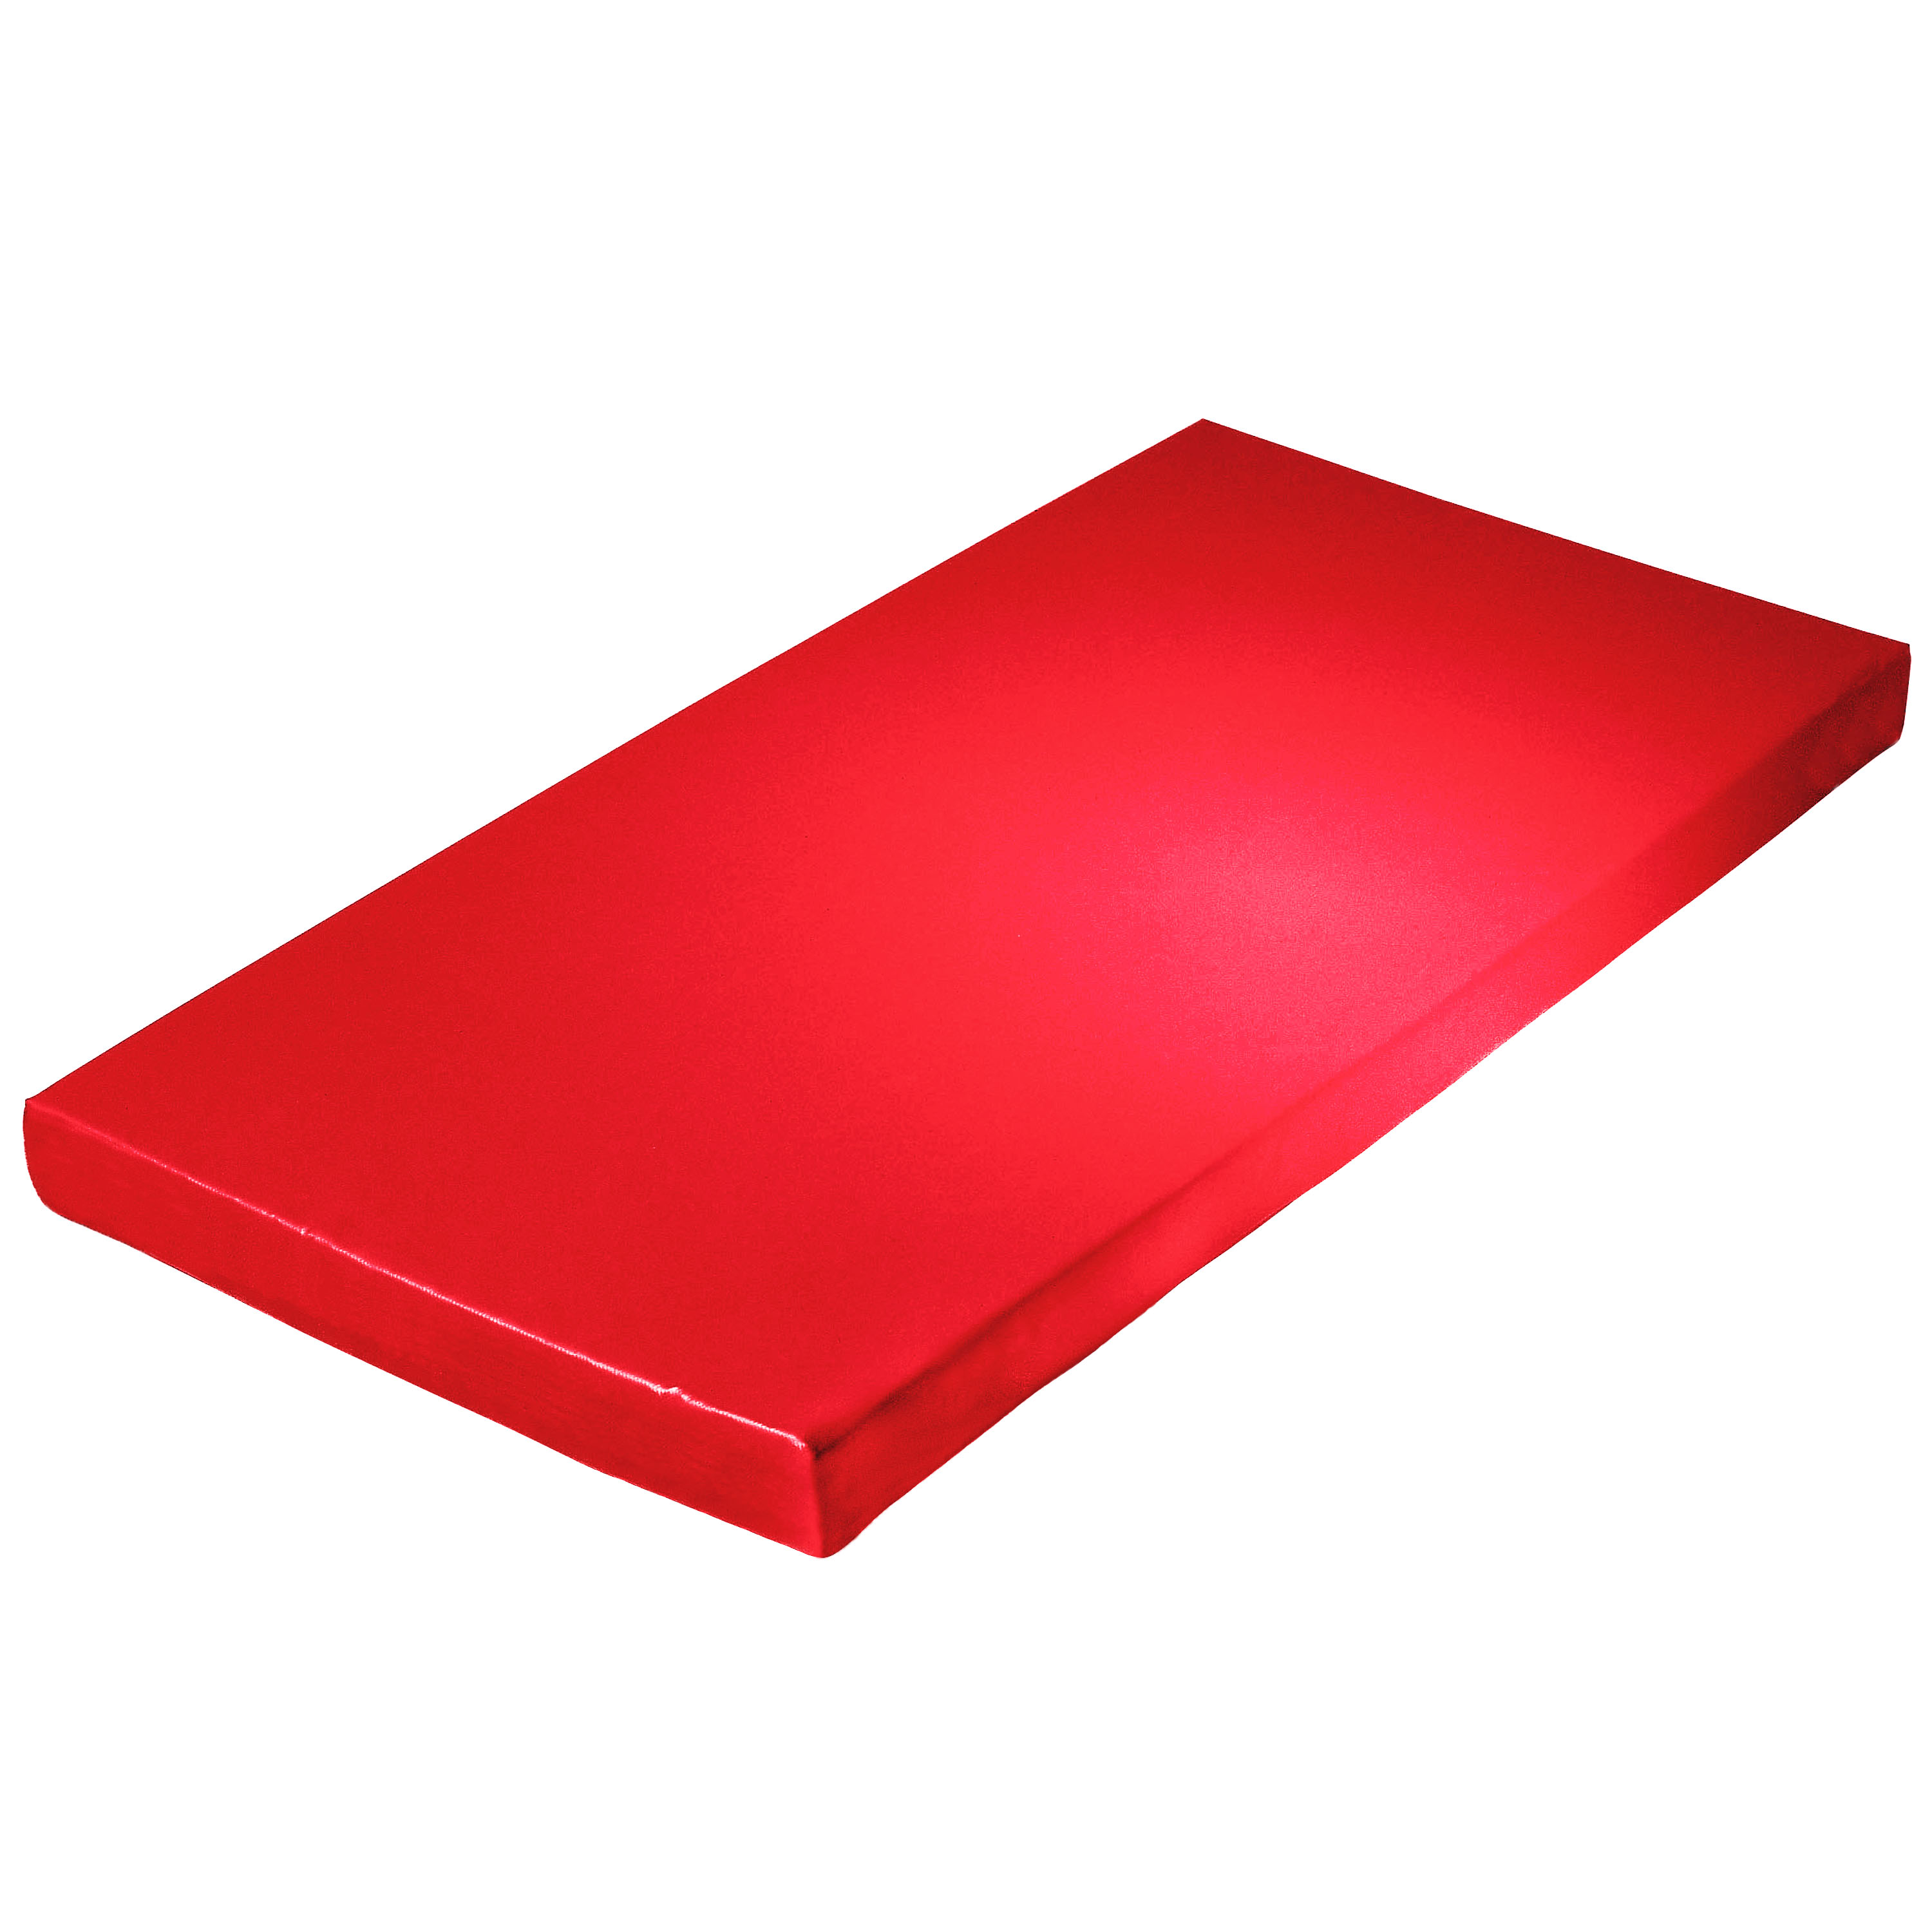 Super-Leichtturnmatte 200 x 100 x 8 cm, rot